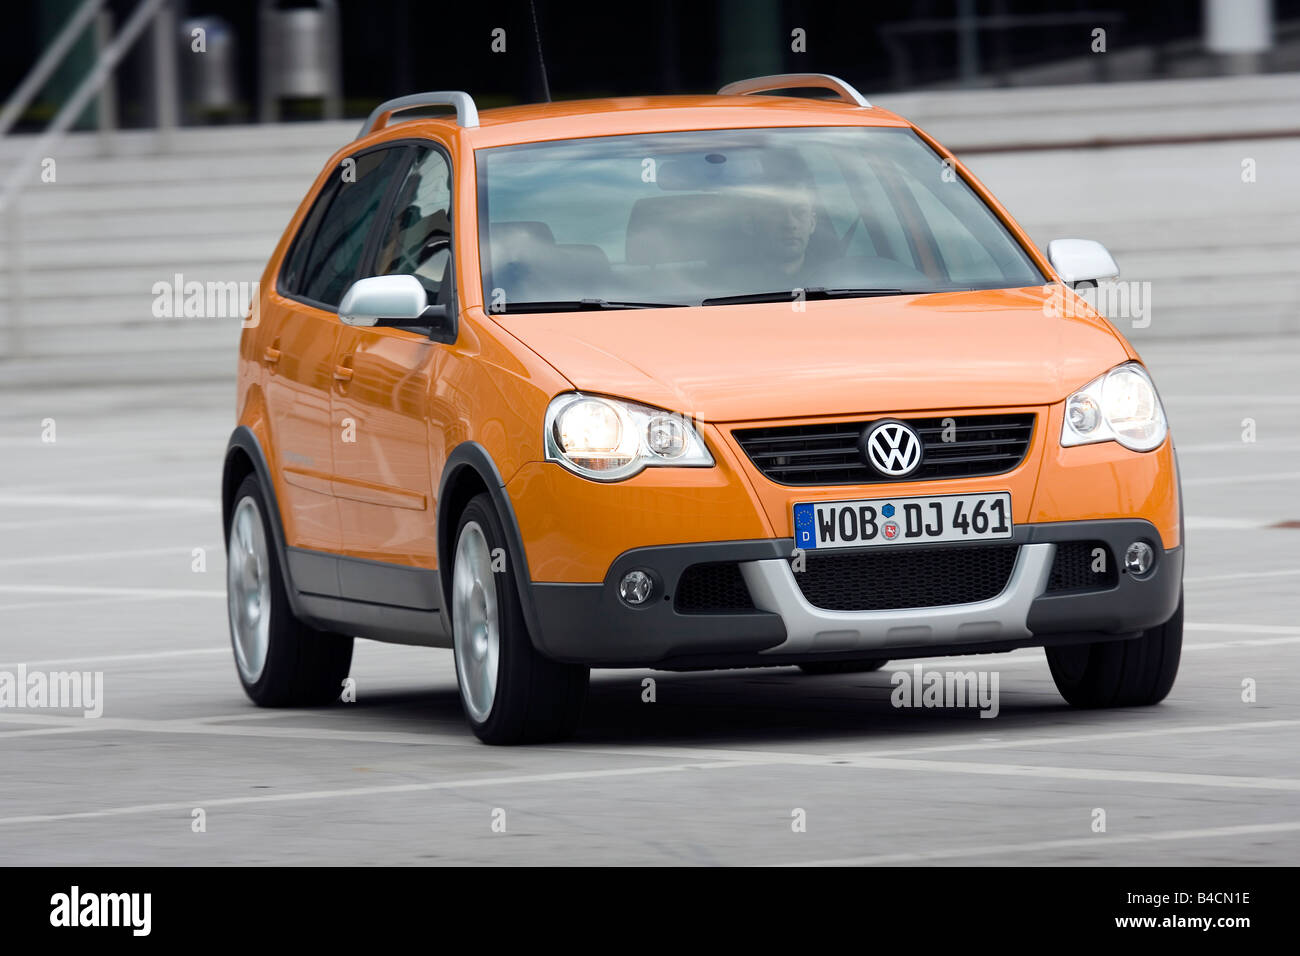 VW Volkswagen Cross Polo 1.4 TDI, Modell Jahr 2006-, orange, fahren, schräg von vorne, Vorderansicht, Stadt Stockfoto